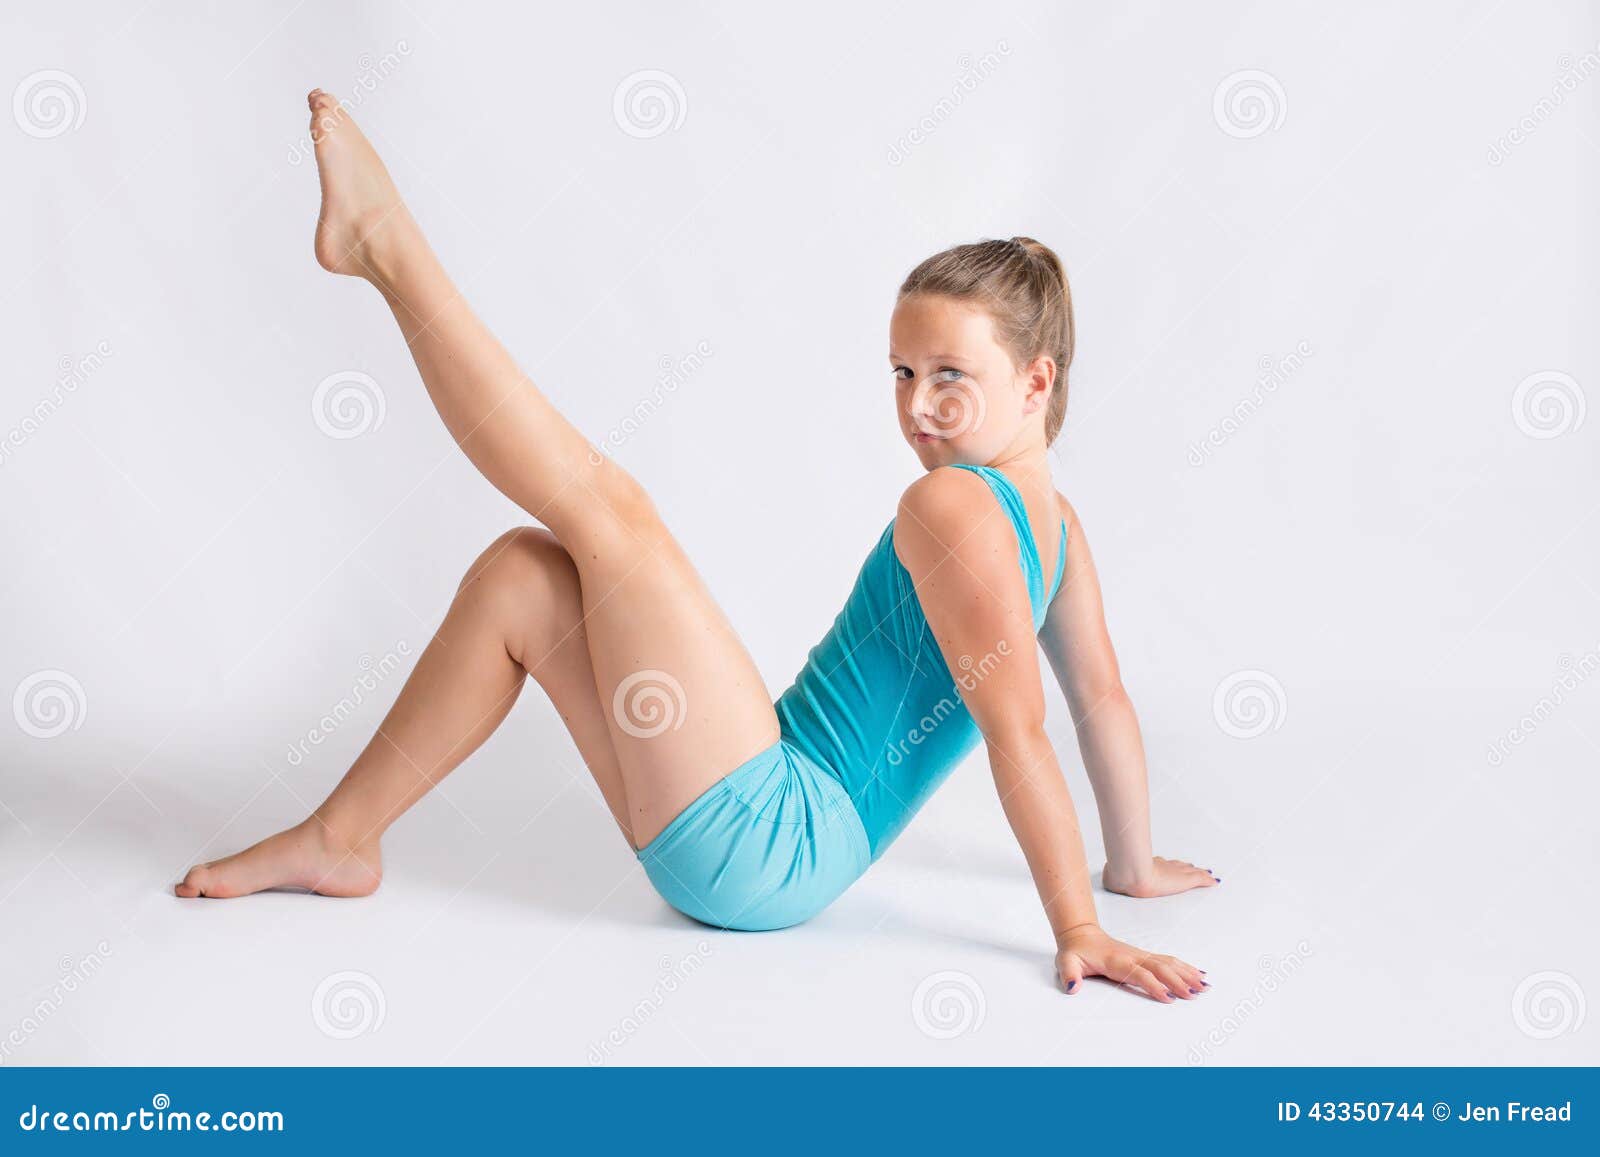 Jeune Fille Dans La Pose De Gymnastique Photo stock - Image du levage,  horizontal: 43350744